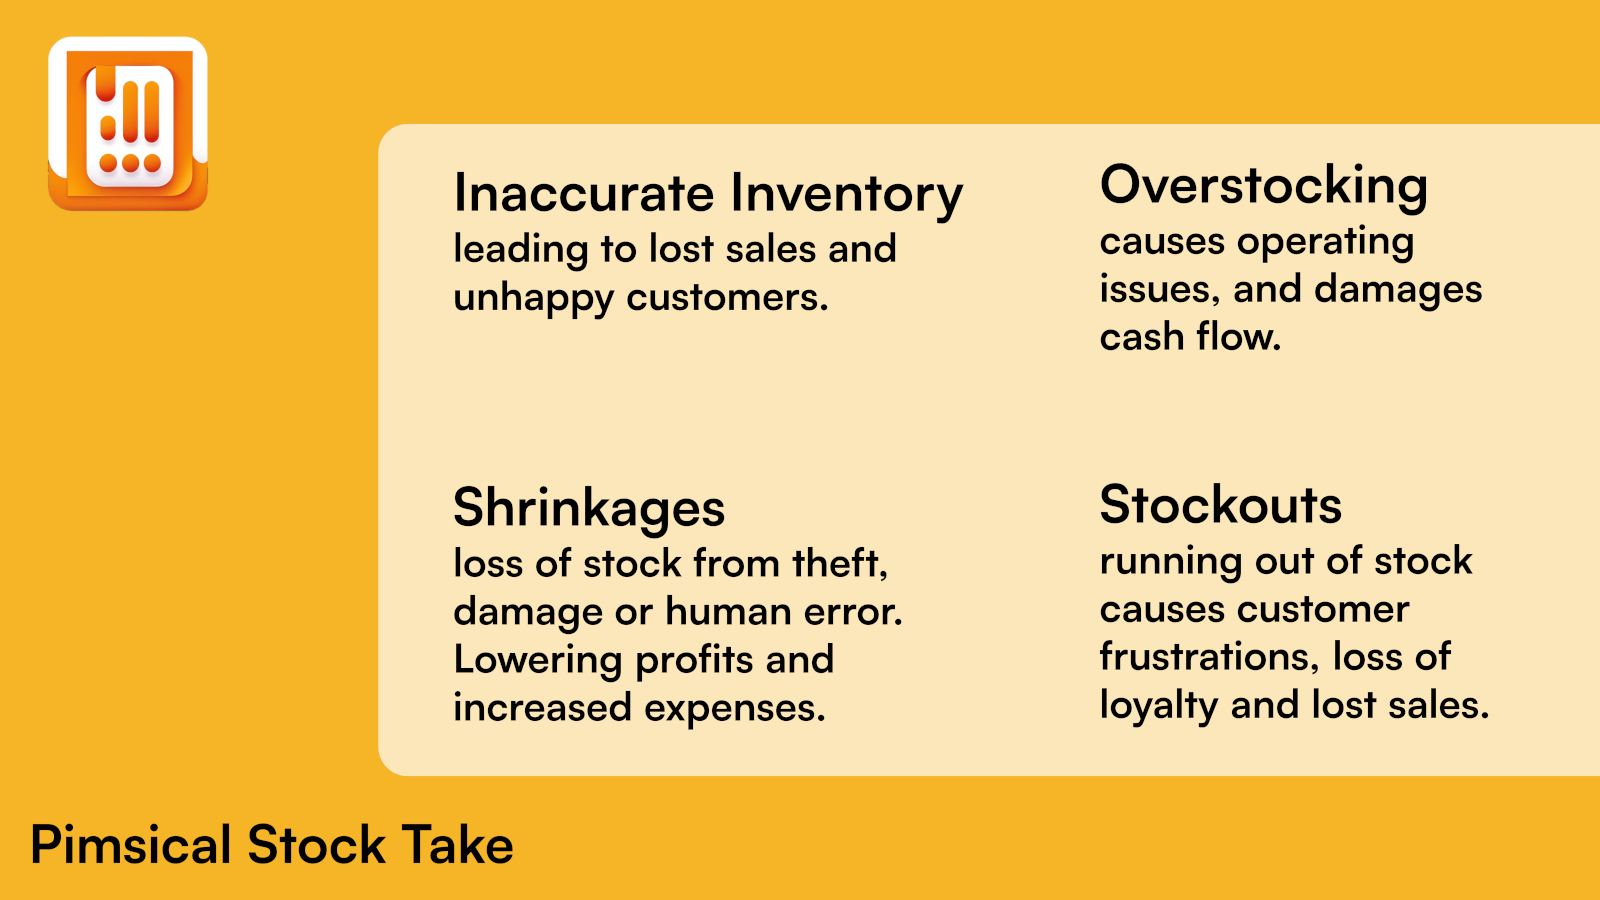 Un inventaire inexact entraîne une perte de ventes et des clients mécontents